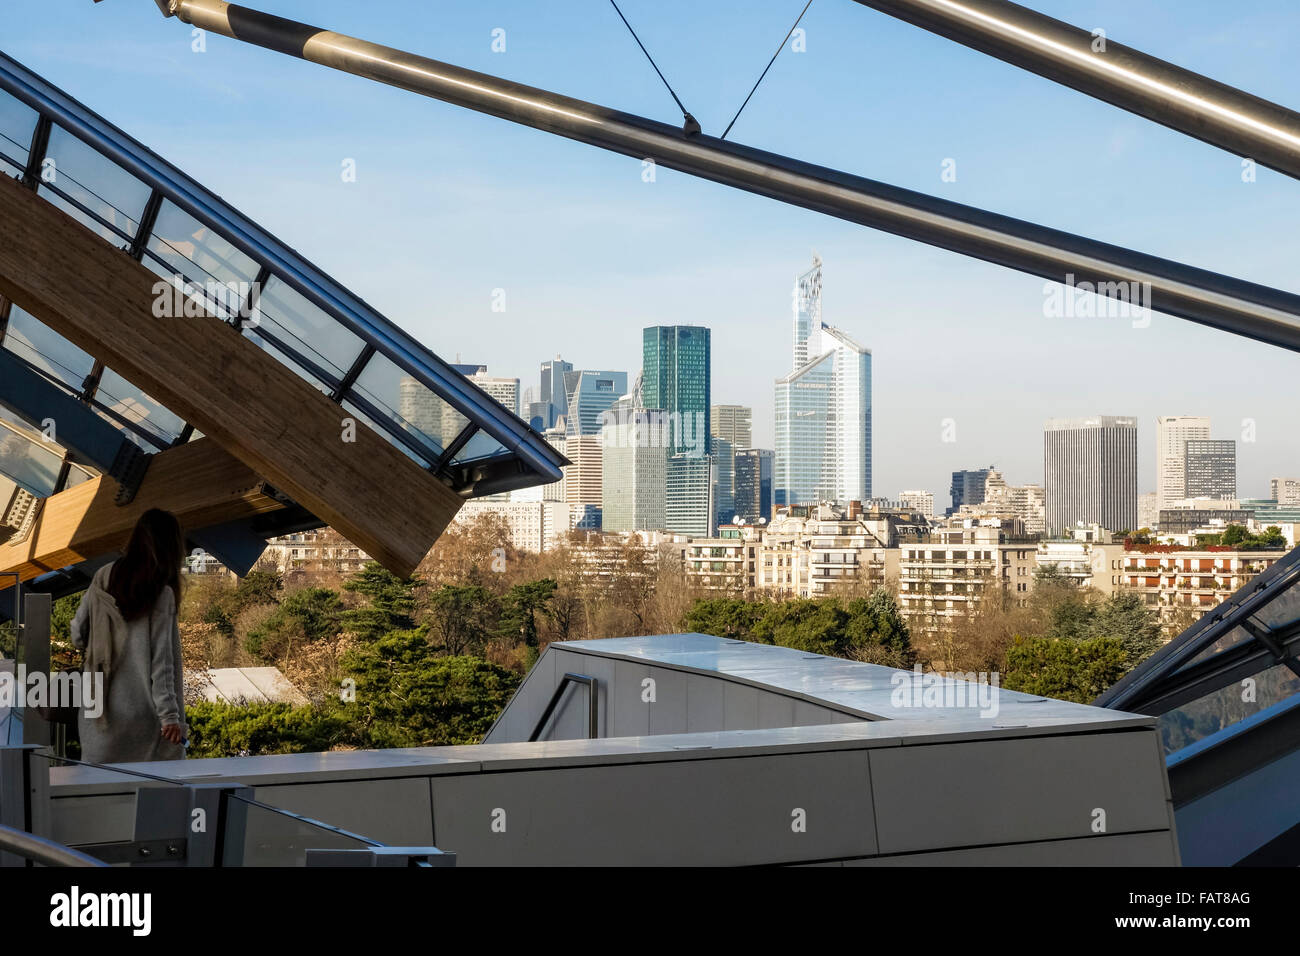 Louis Vuitton Foundation, des Architekten Frank Gehry, Kunstmuseum, la Défense im Hintergrund am Bois De Boulogne, Paris, Frankreich. Stockfoto